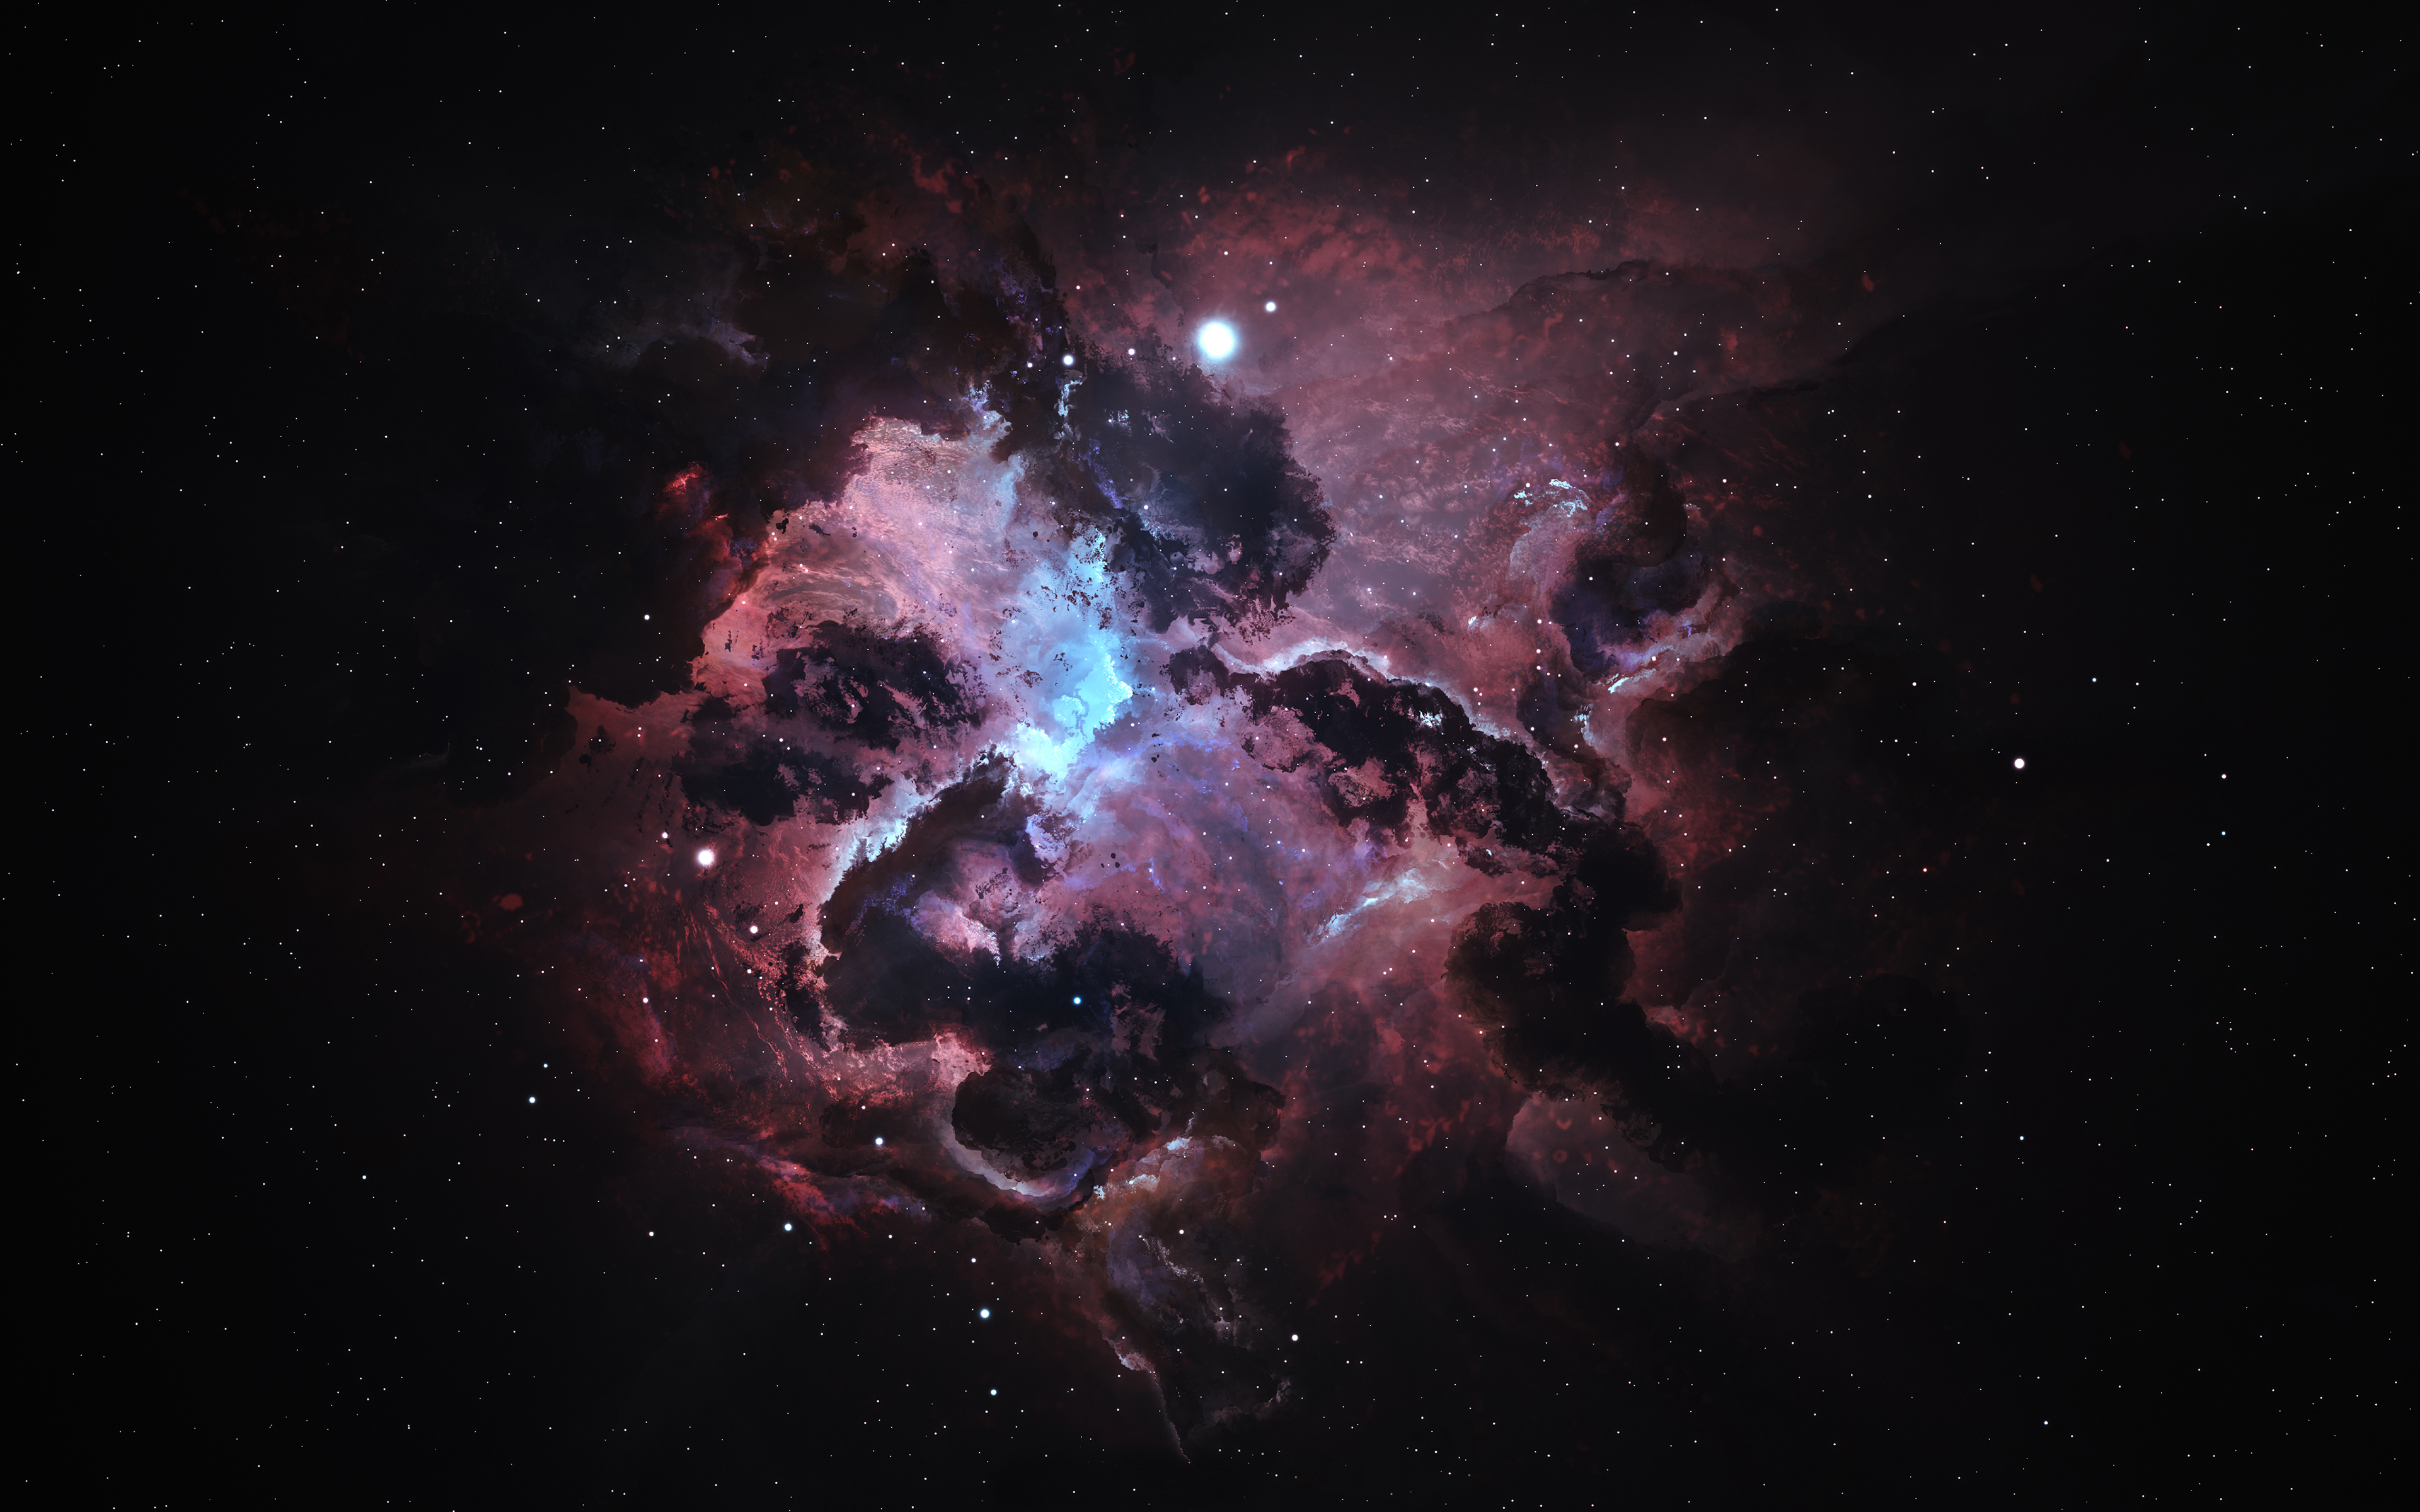 壁紙 空間内の星雲 Atlantis Nexus Nebula Starkiteckt 宇宙空間 ダウンロード 写真